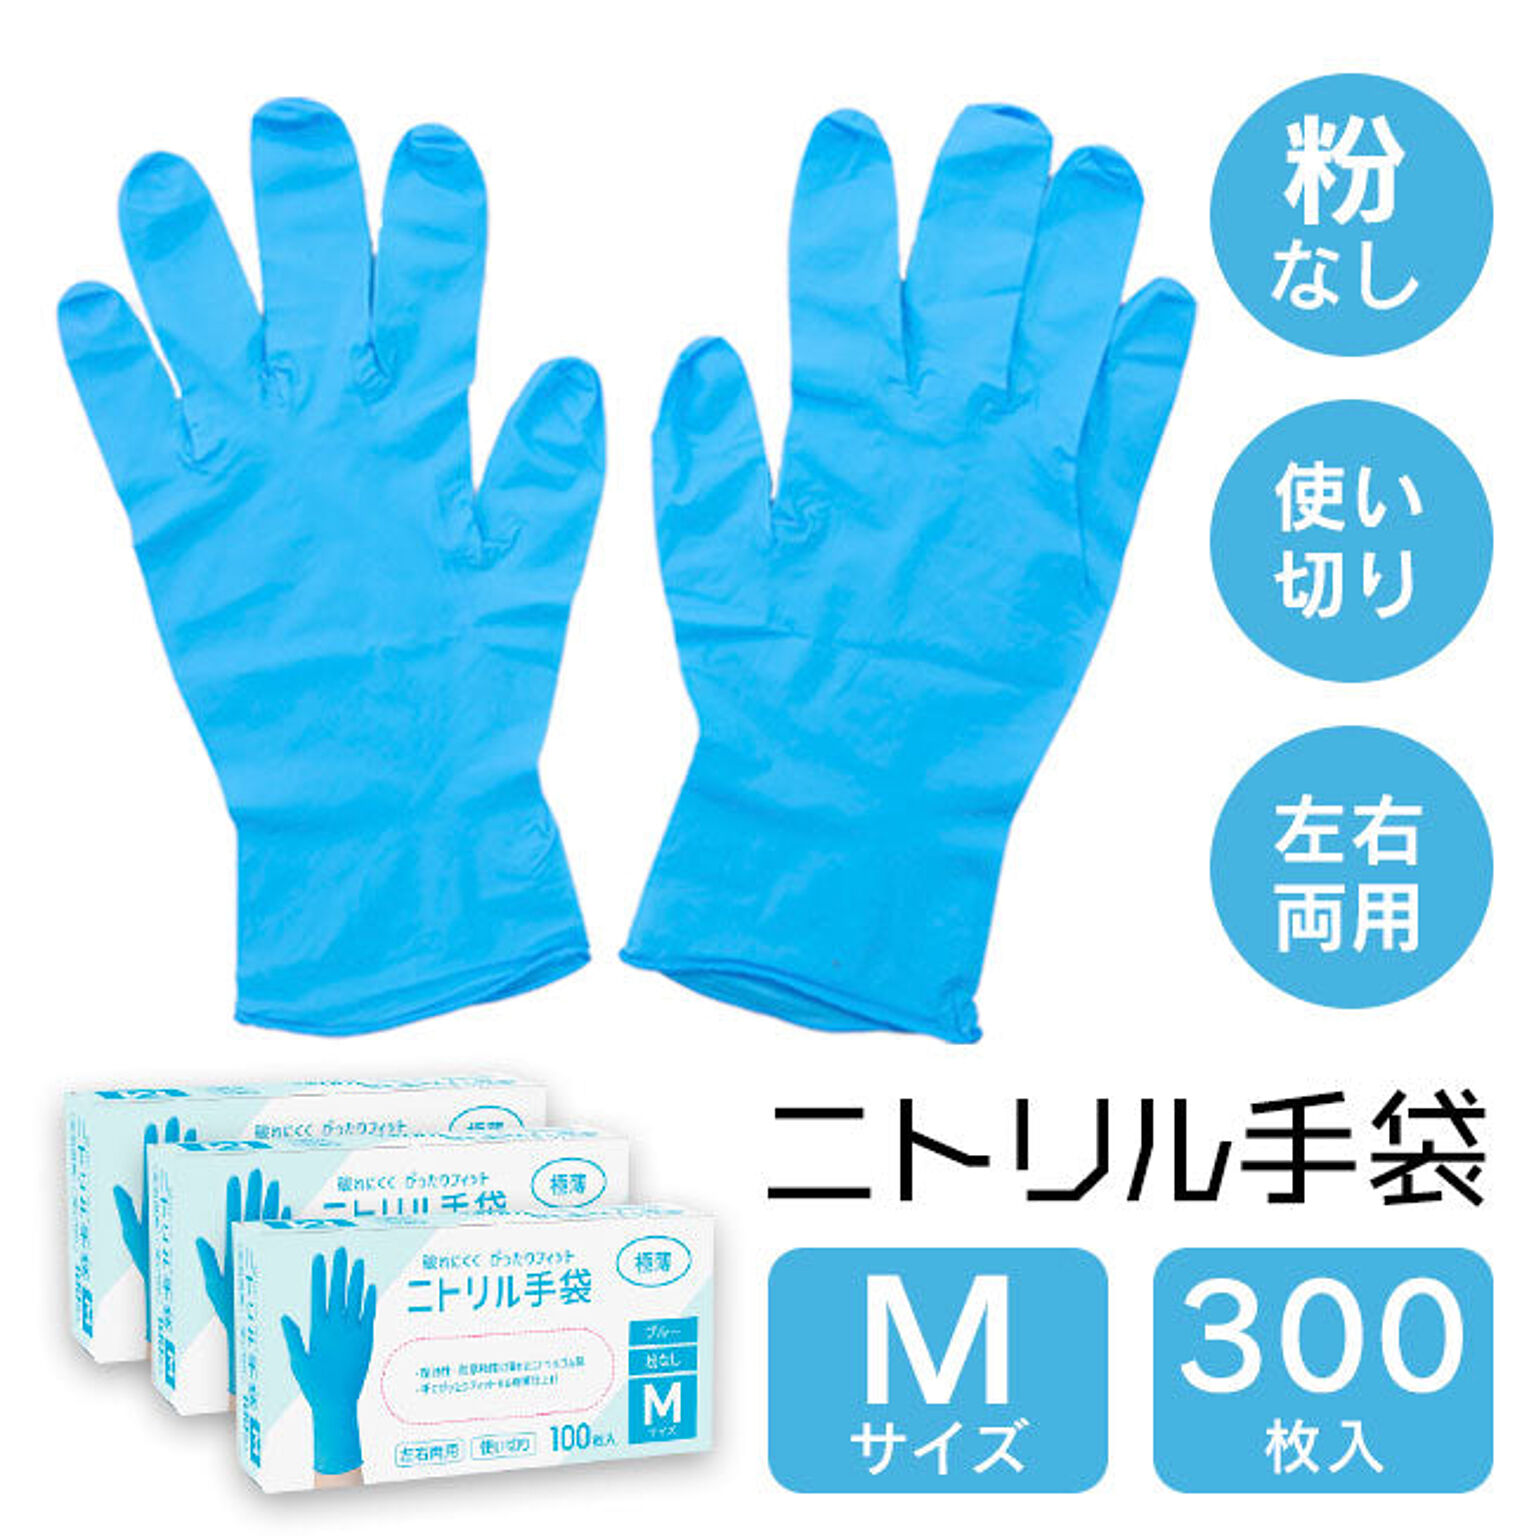 【☆80】/ニトリル手袋100枚入【3箱セット】